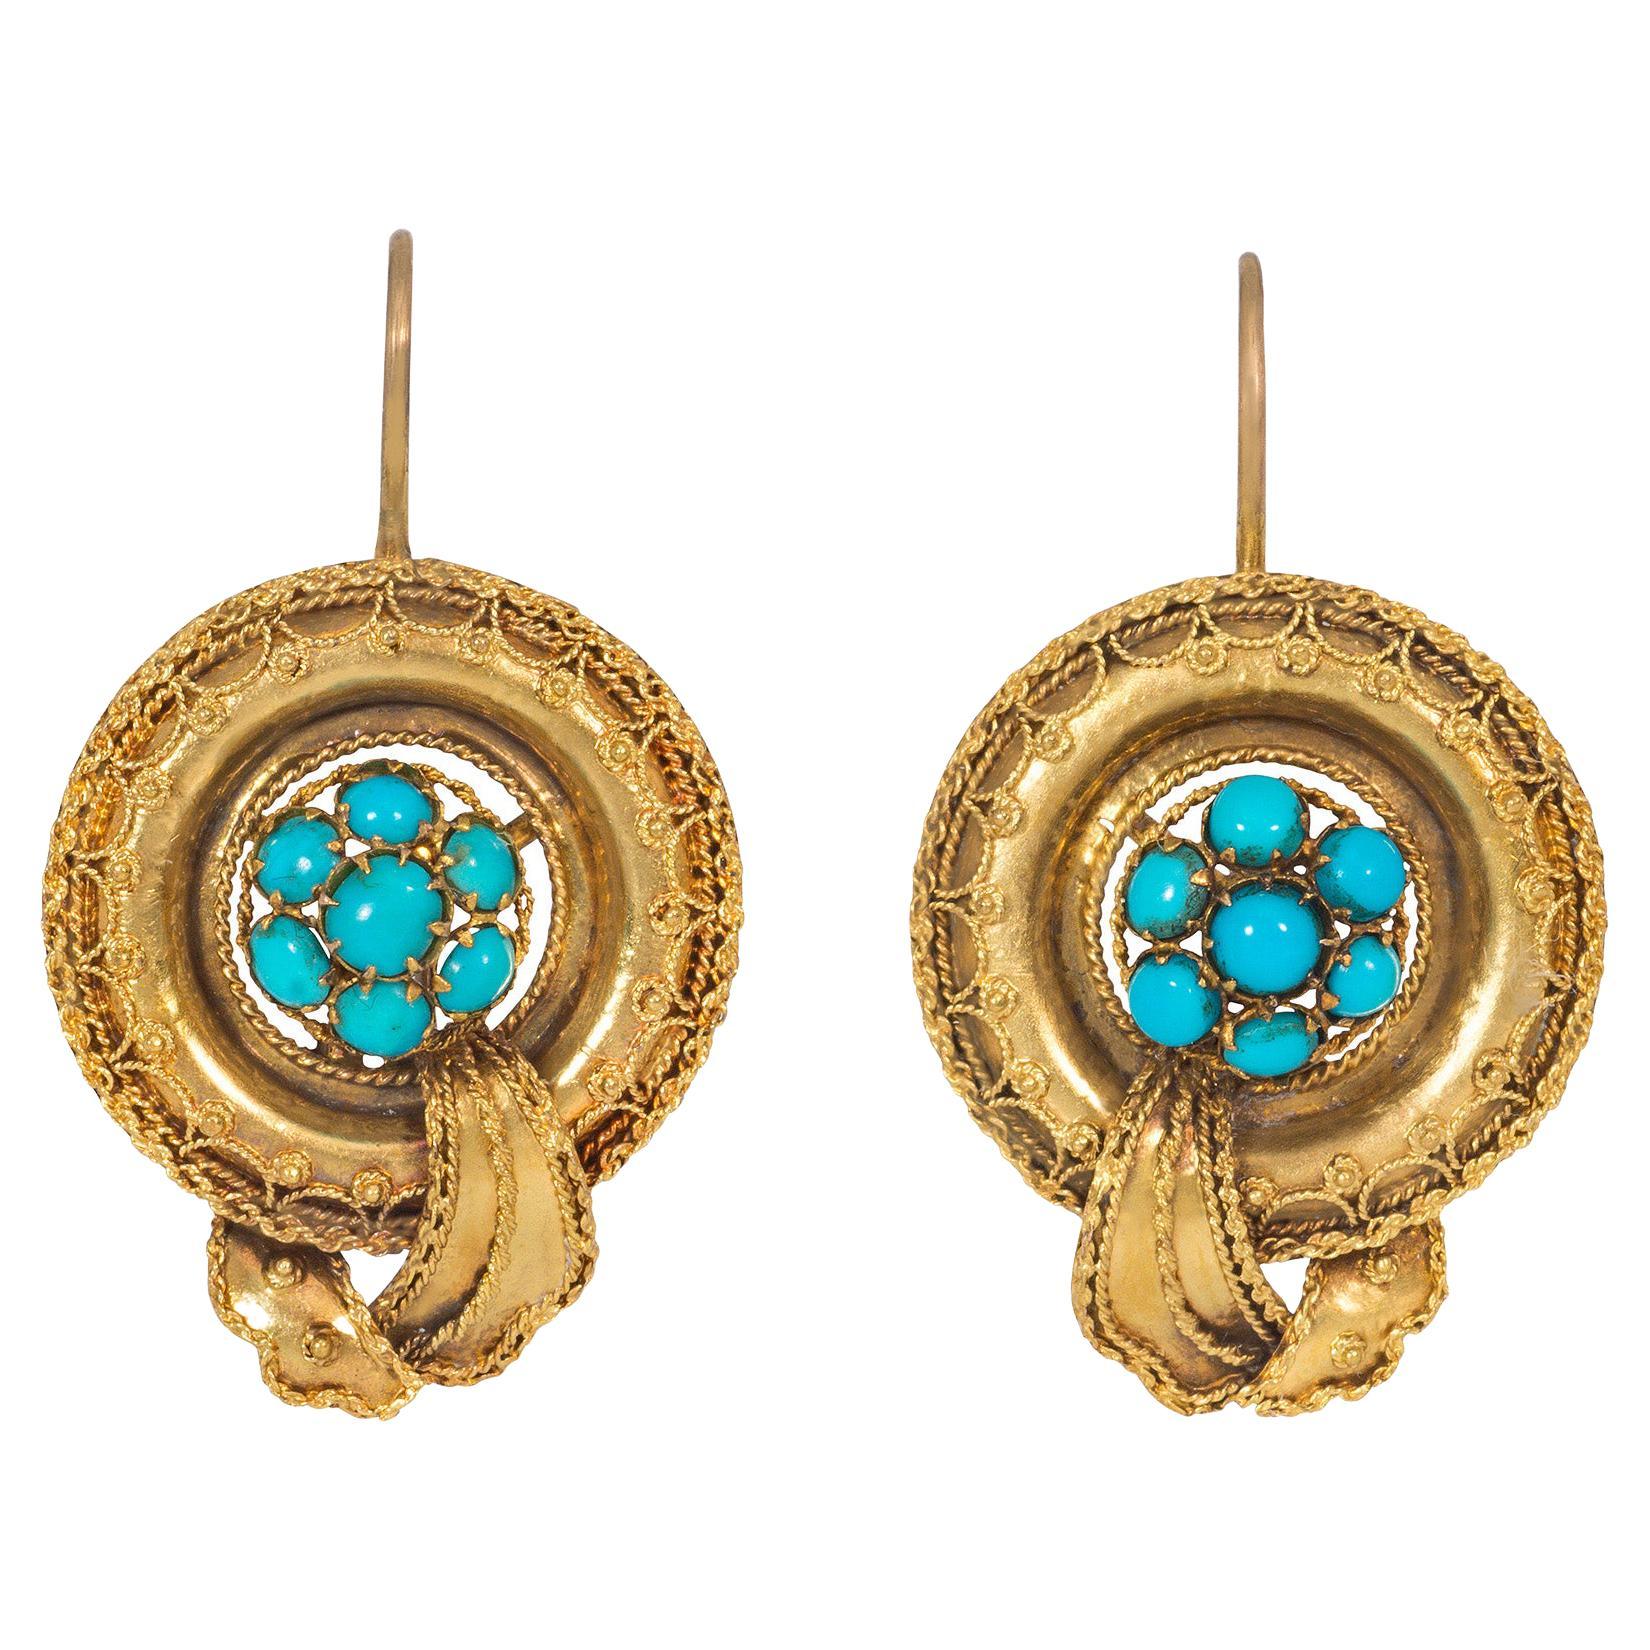 Viktorianische Gold- und Türkis-Ohrringe mit applizierter Granulation und Drahtarbeit